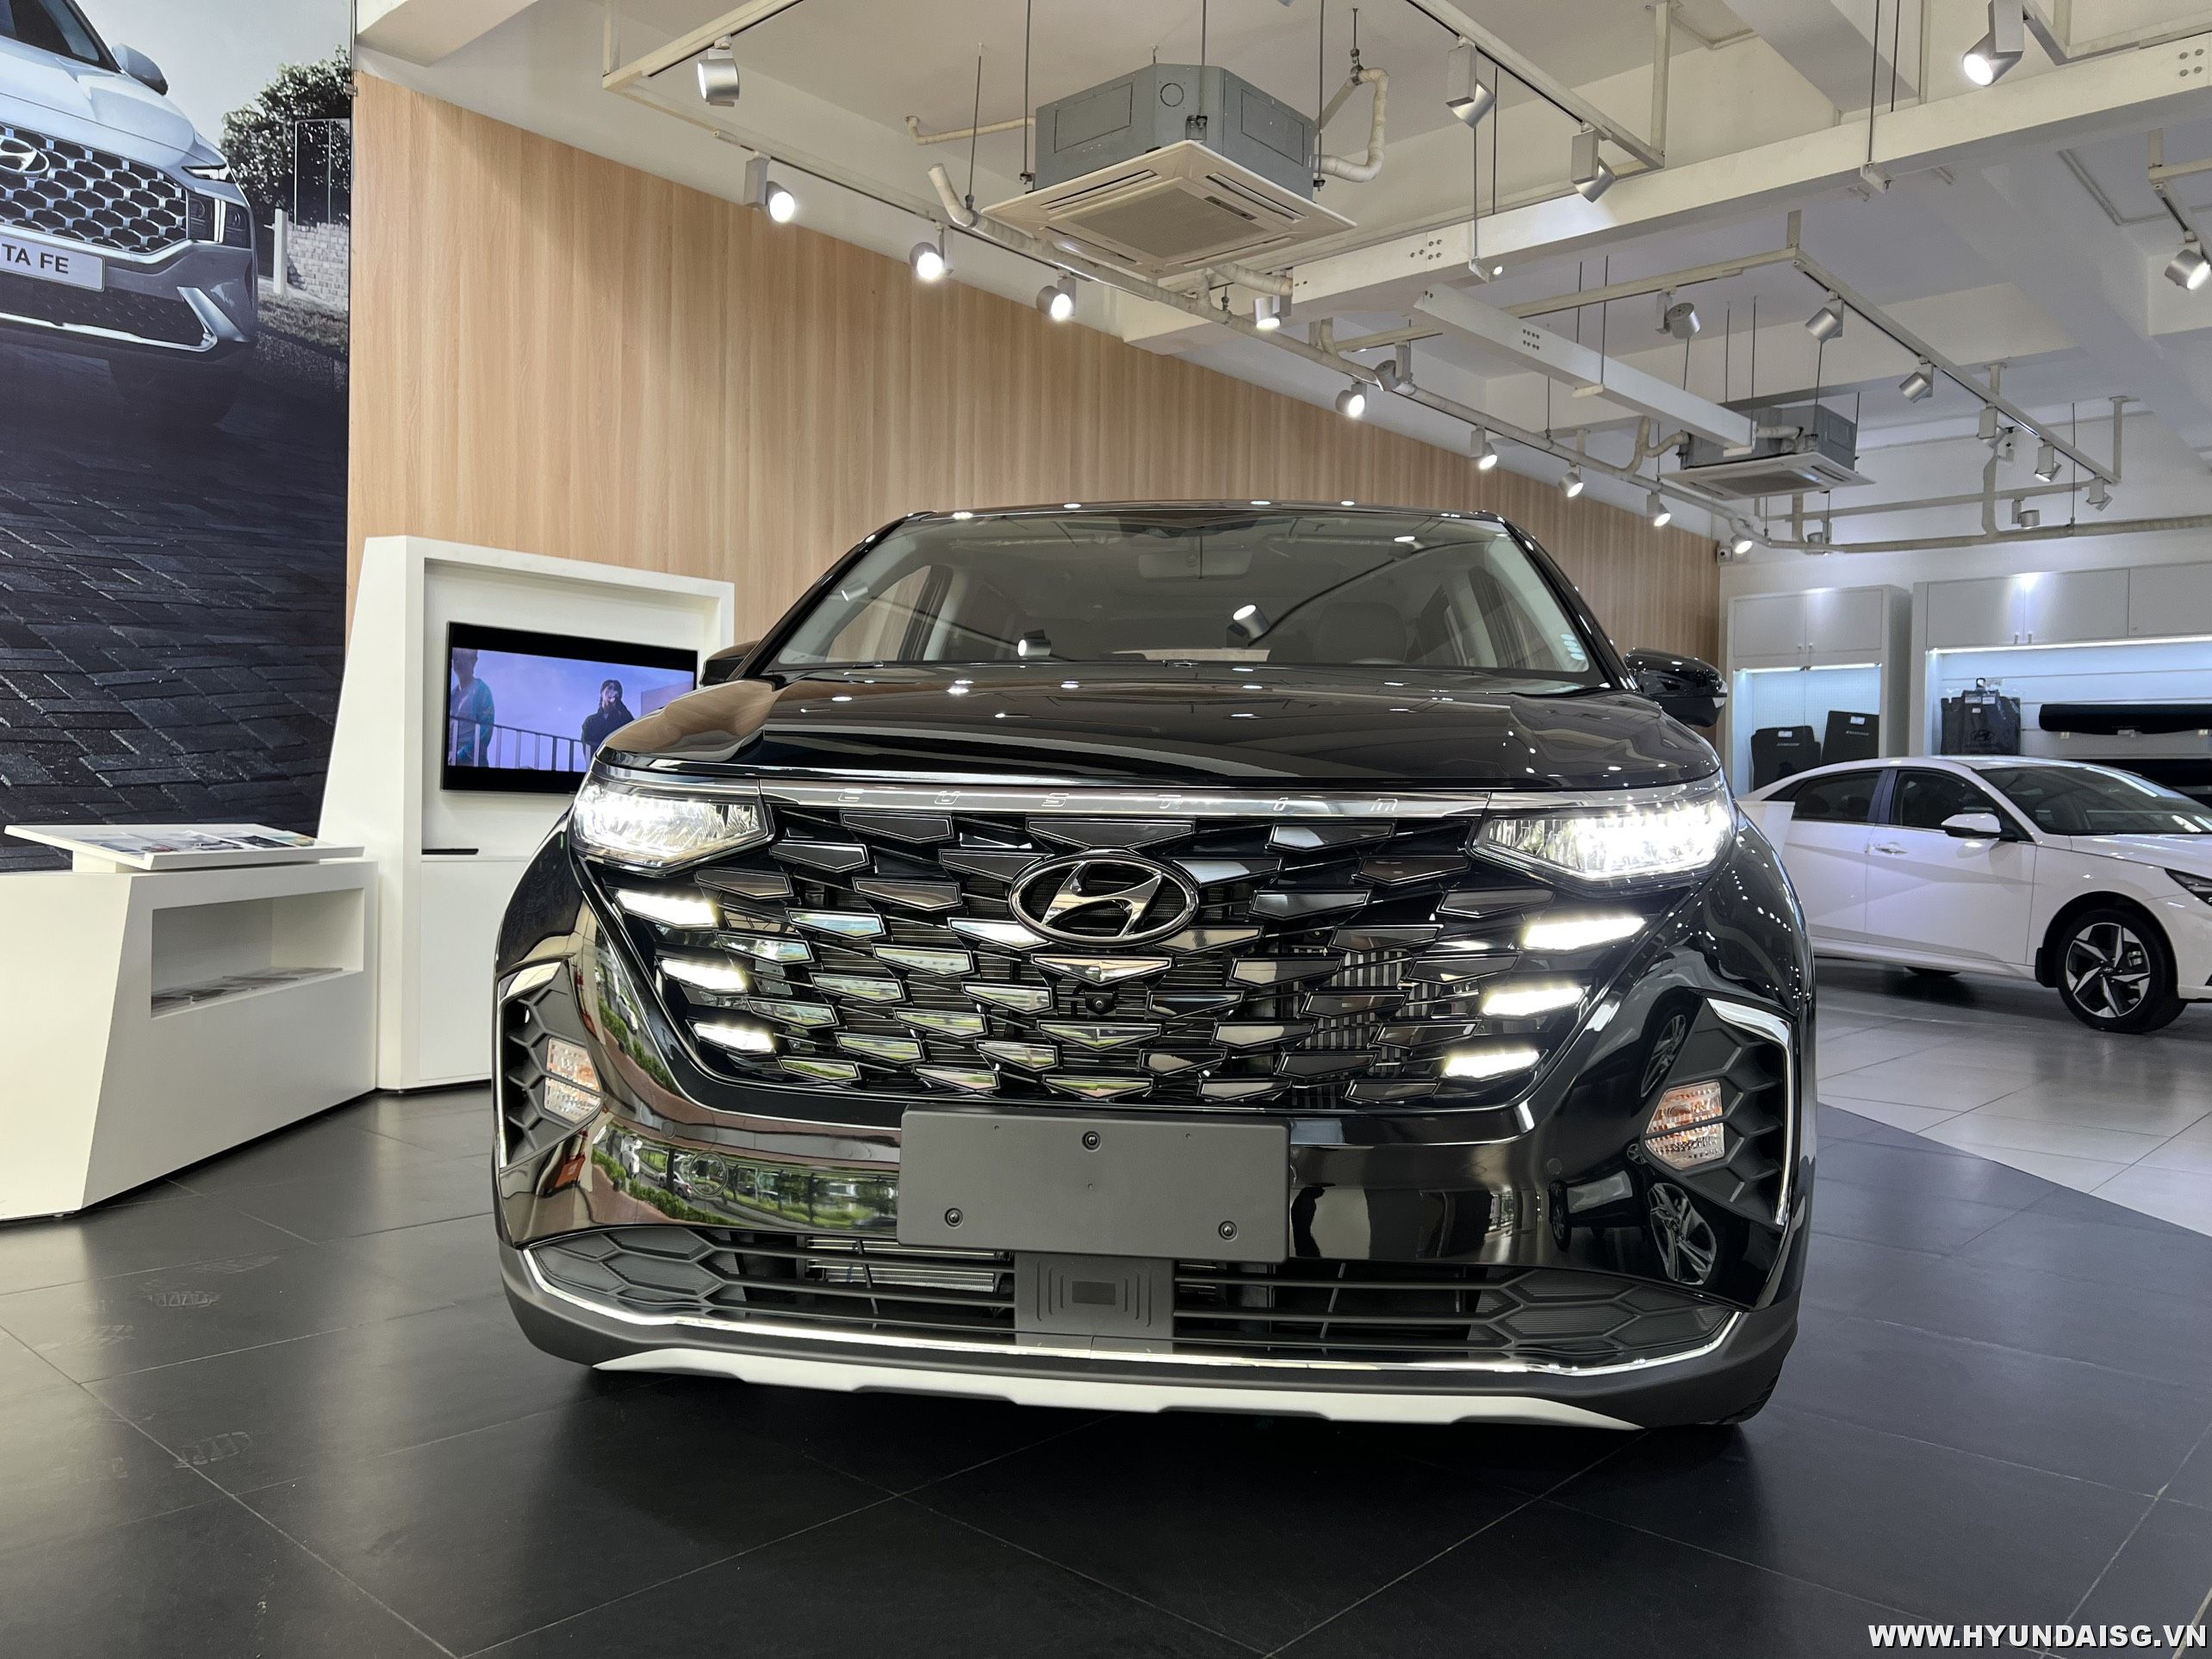 Read more about the article Hướng dẫn sử dụng xe Hyundai Custin cho người mới